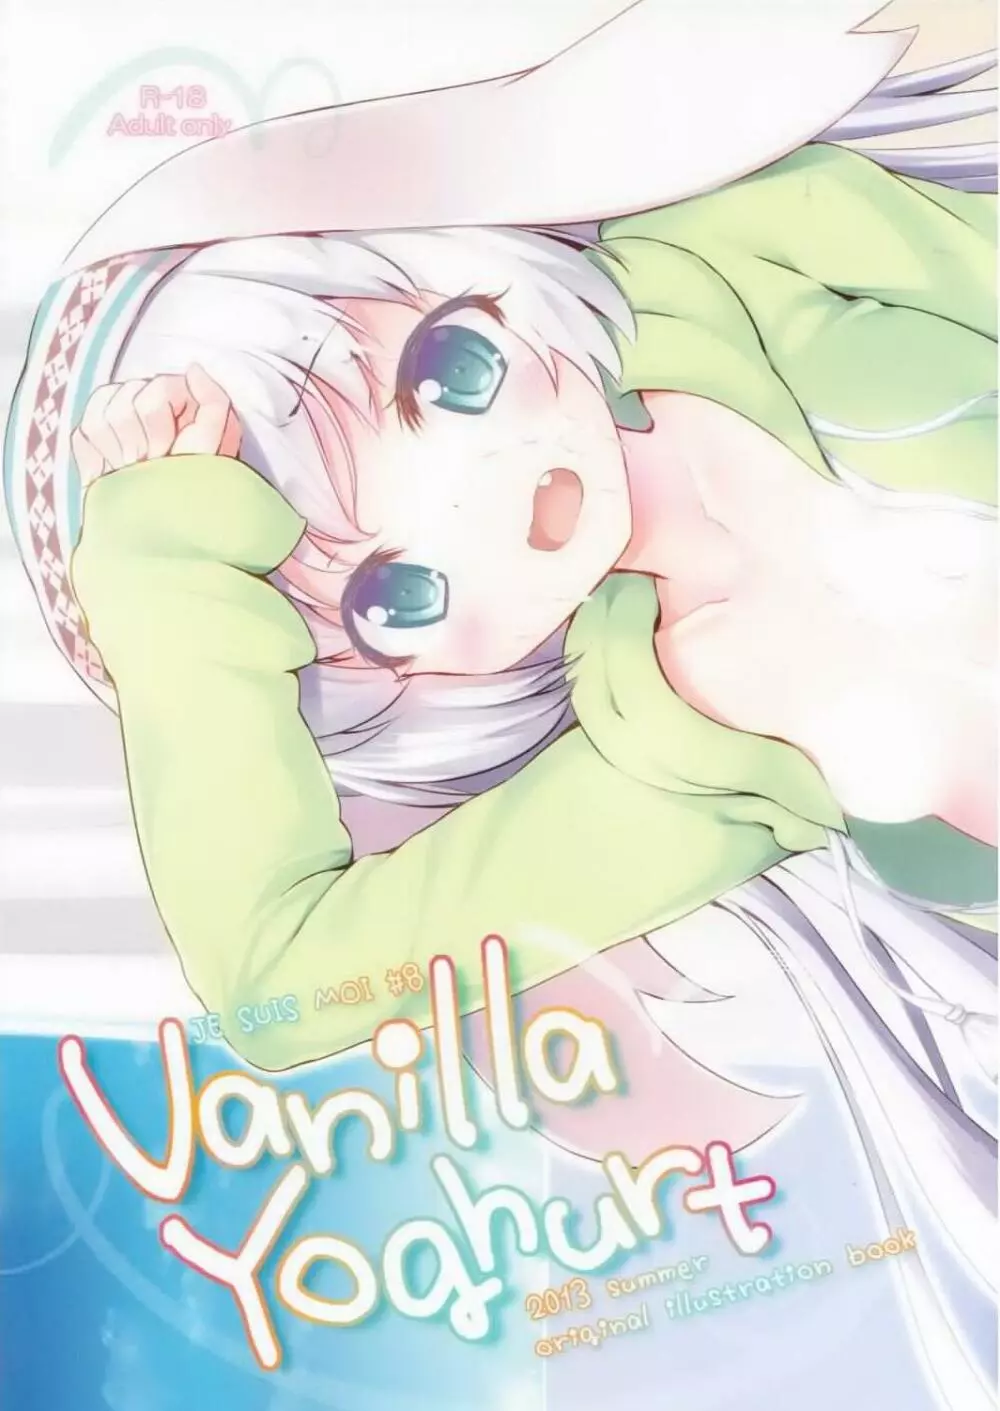 じゅすぃもあ!#8 Vanilla Yoghurt